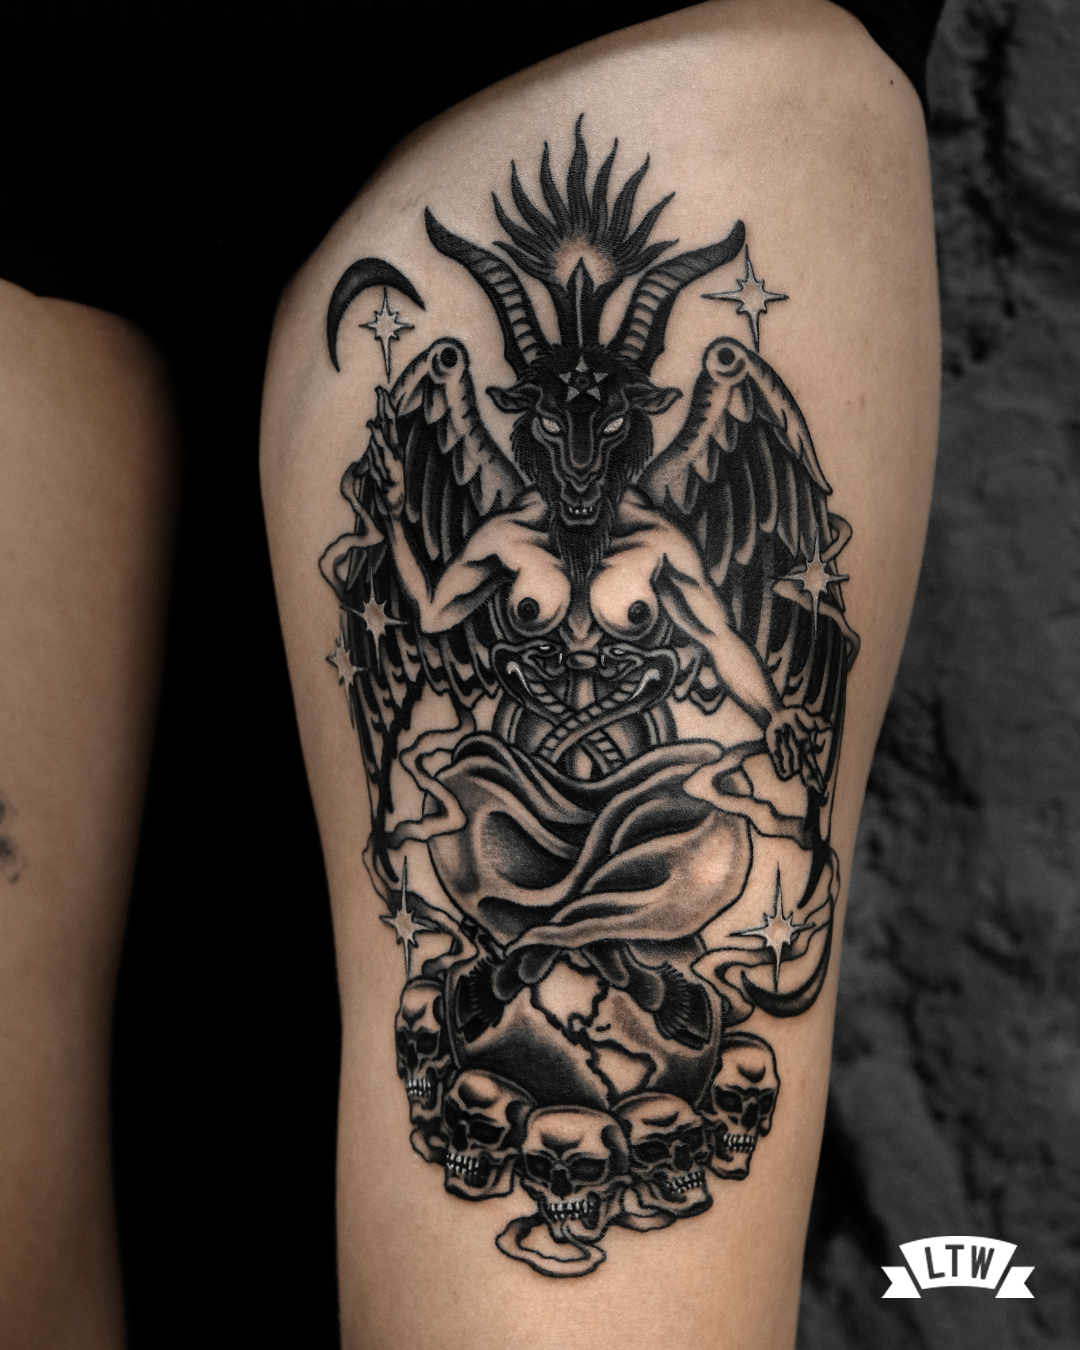 Baphomet tatuado en blanco y negro por Enol